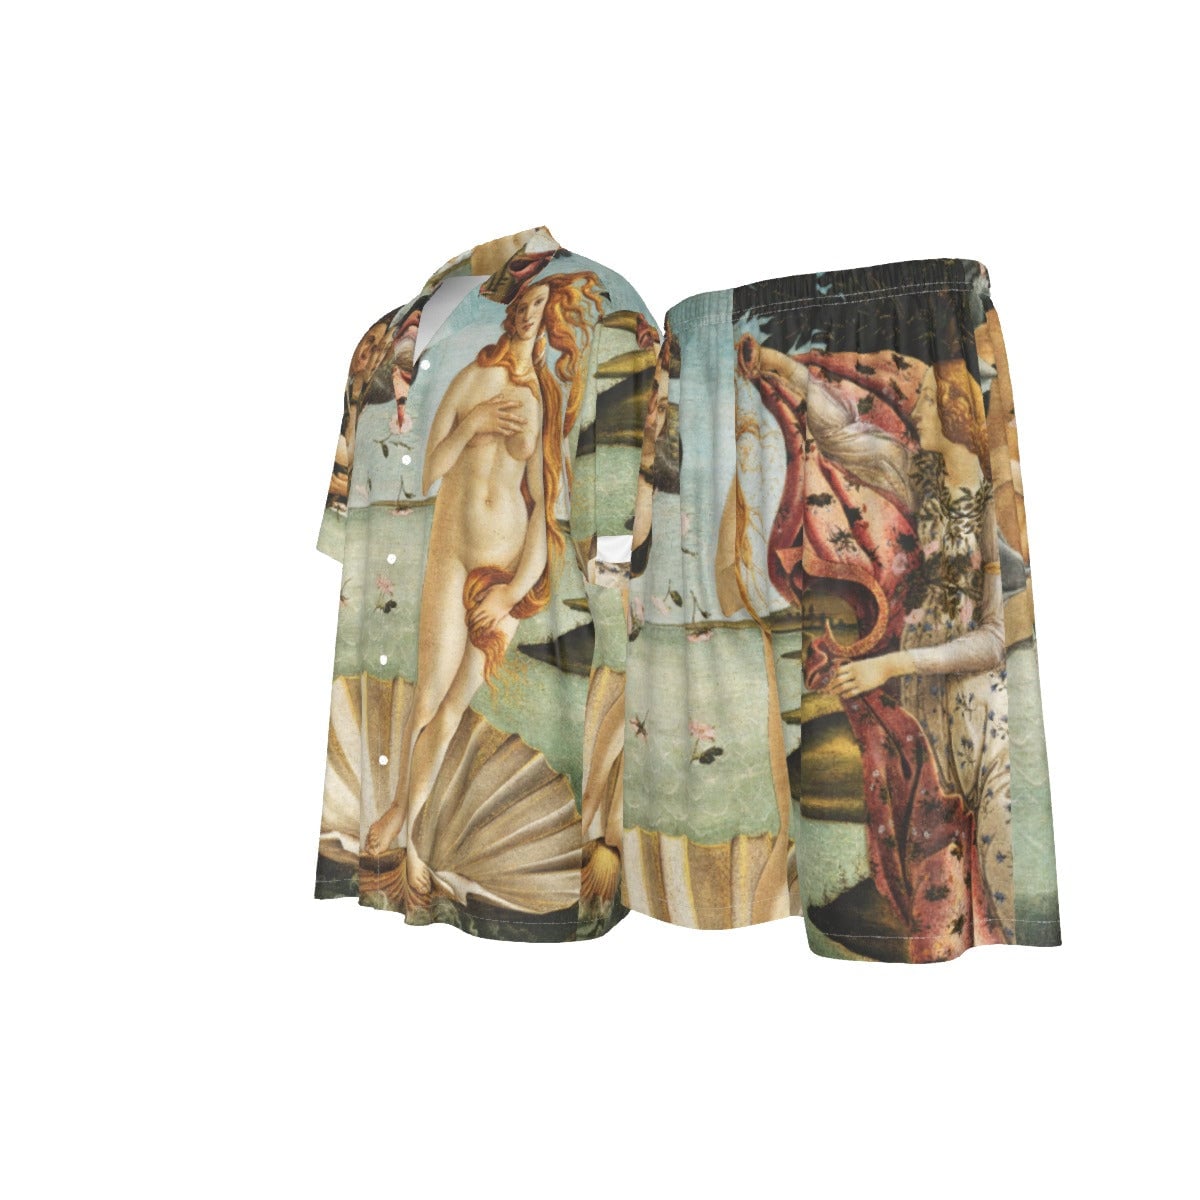 Vénusz születése Sandro Botticelli festő selyem ing öltöny szett